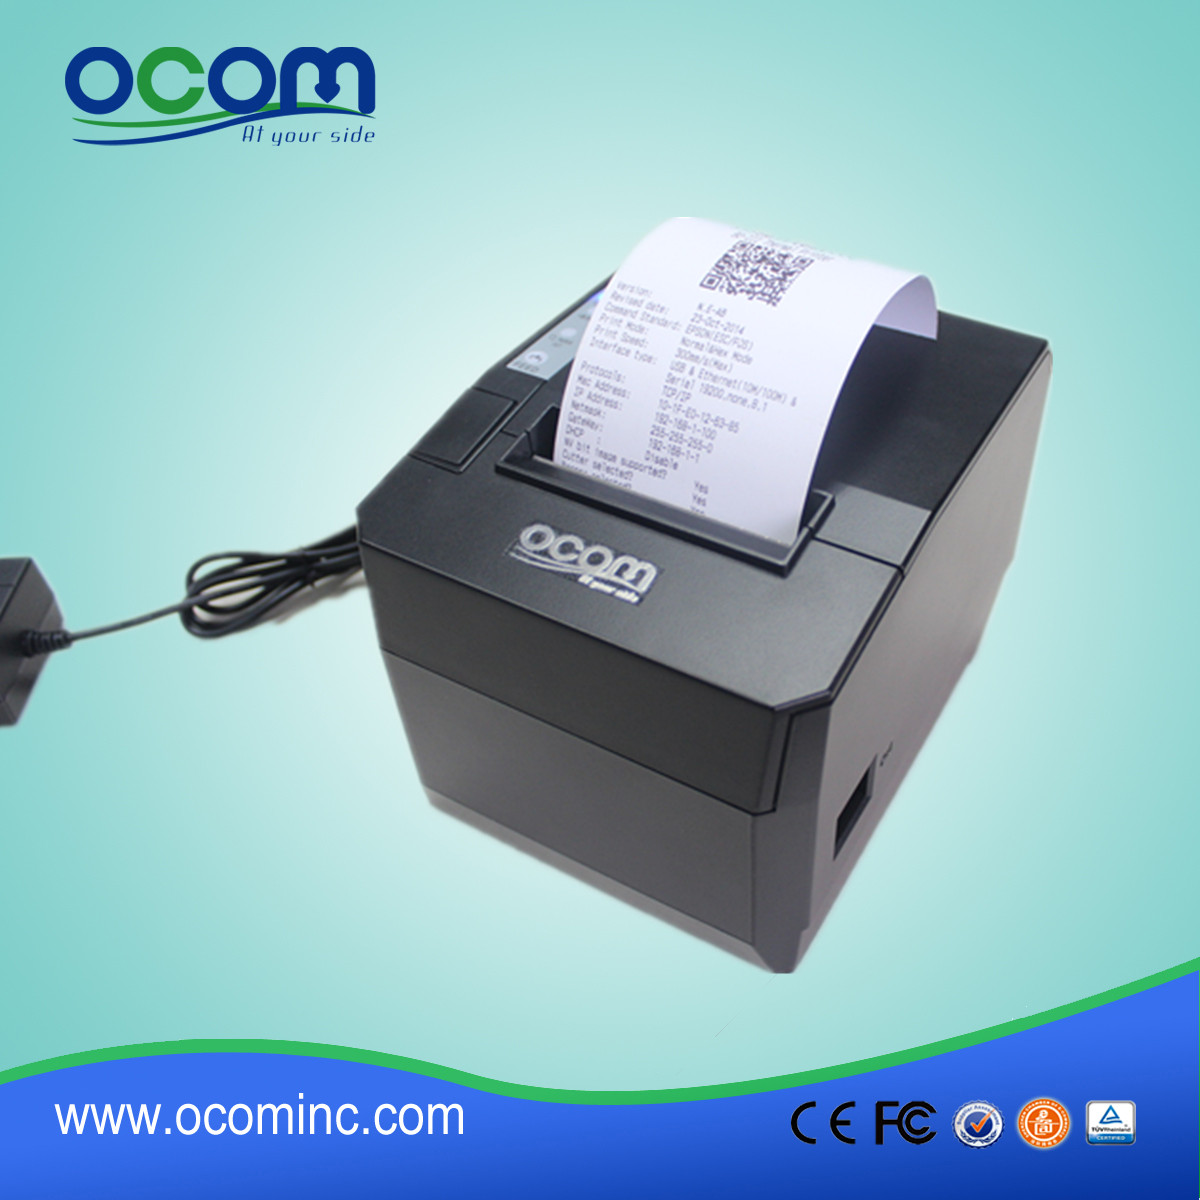 El más nuevo desigh 80mm impresora térmica de recibos-OCPP-88A